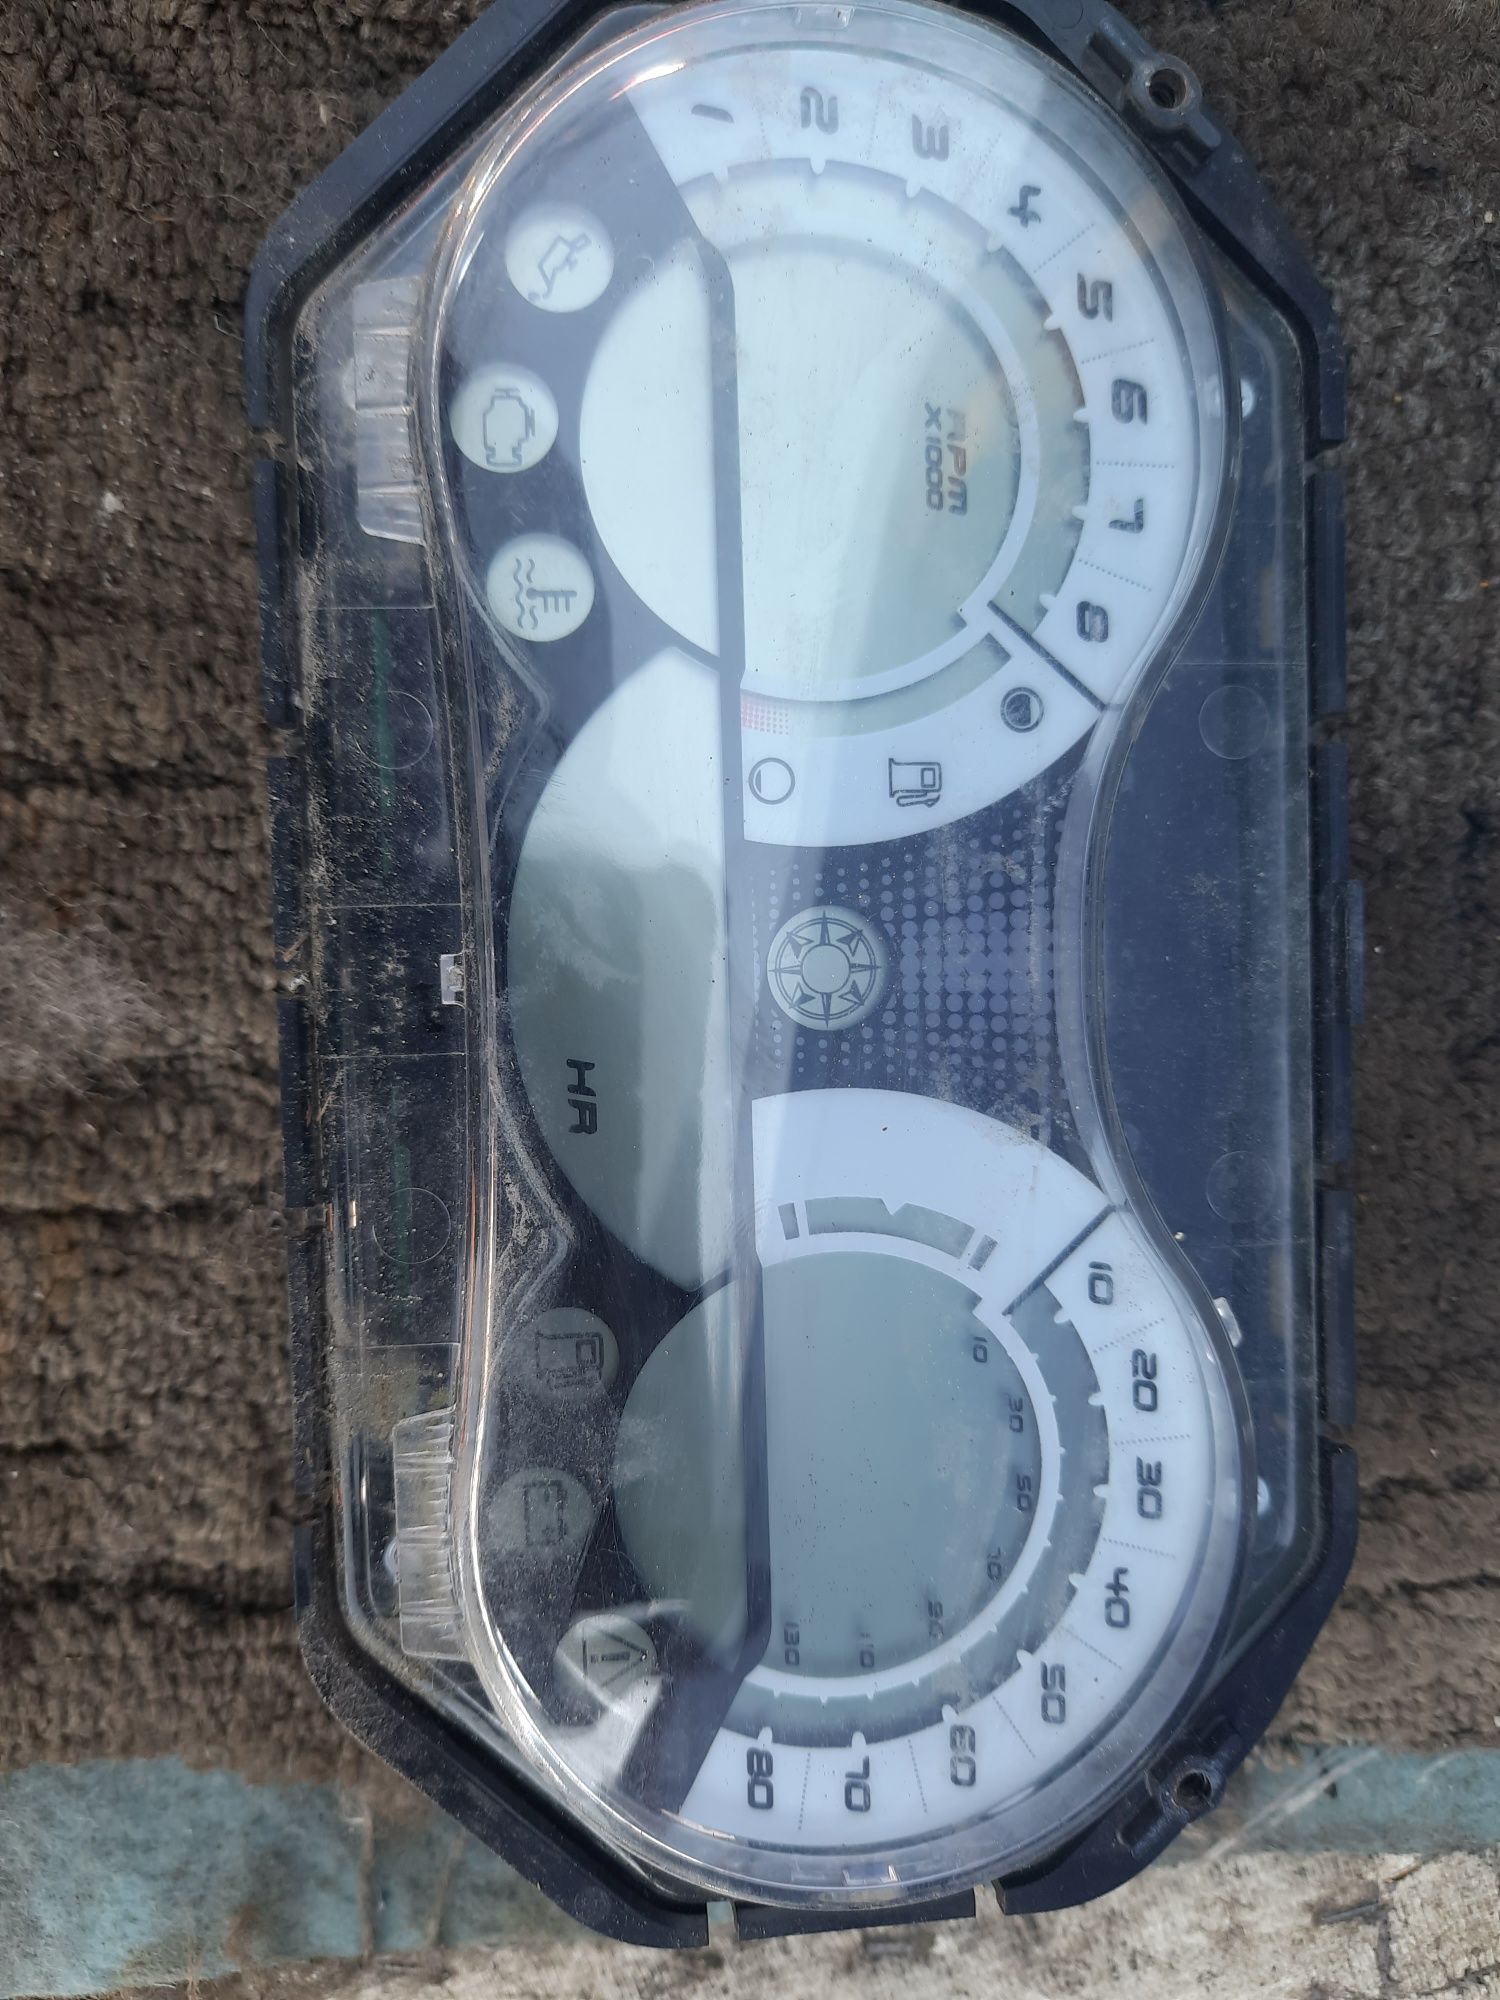 Seadoo licznik zegary wyświetlacz skuter wodny 2007,2008,2009